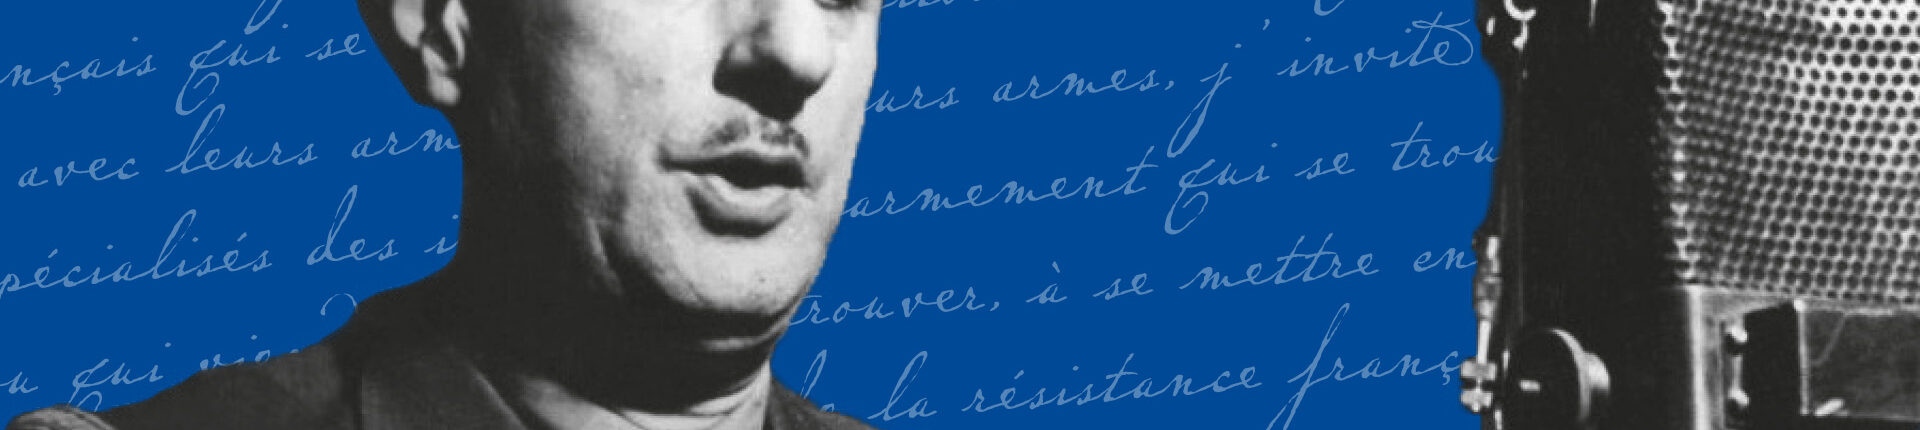 Appel du Général de Gaulle, le fondateur de la France Libre